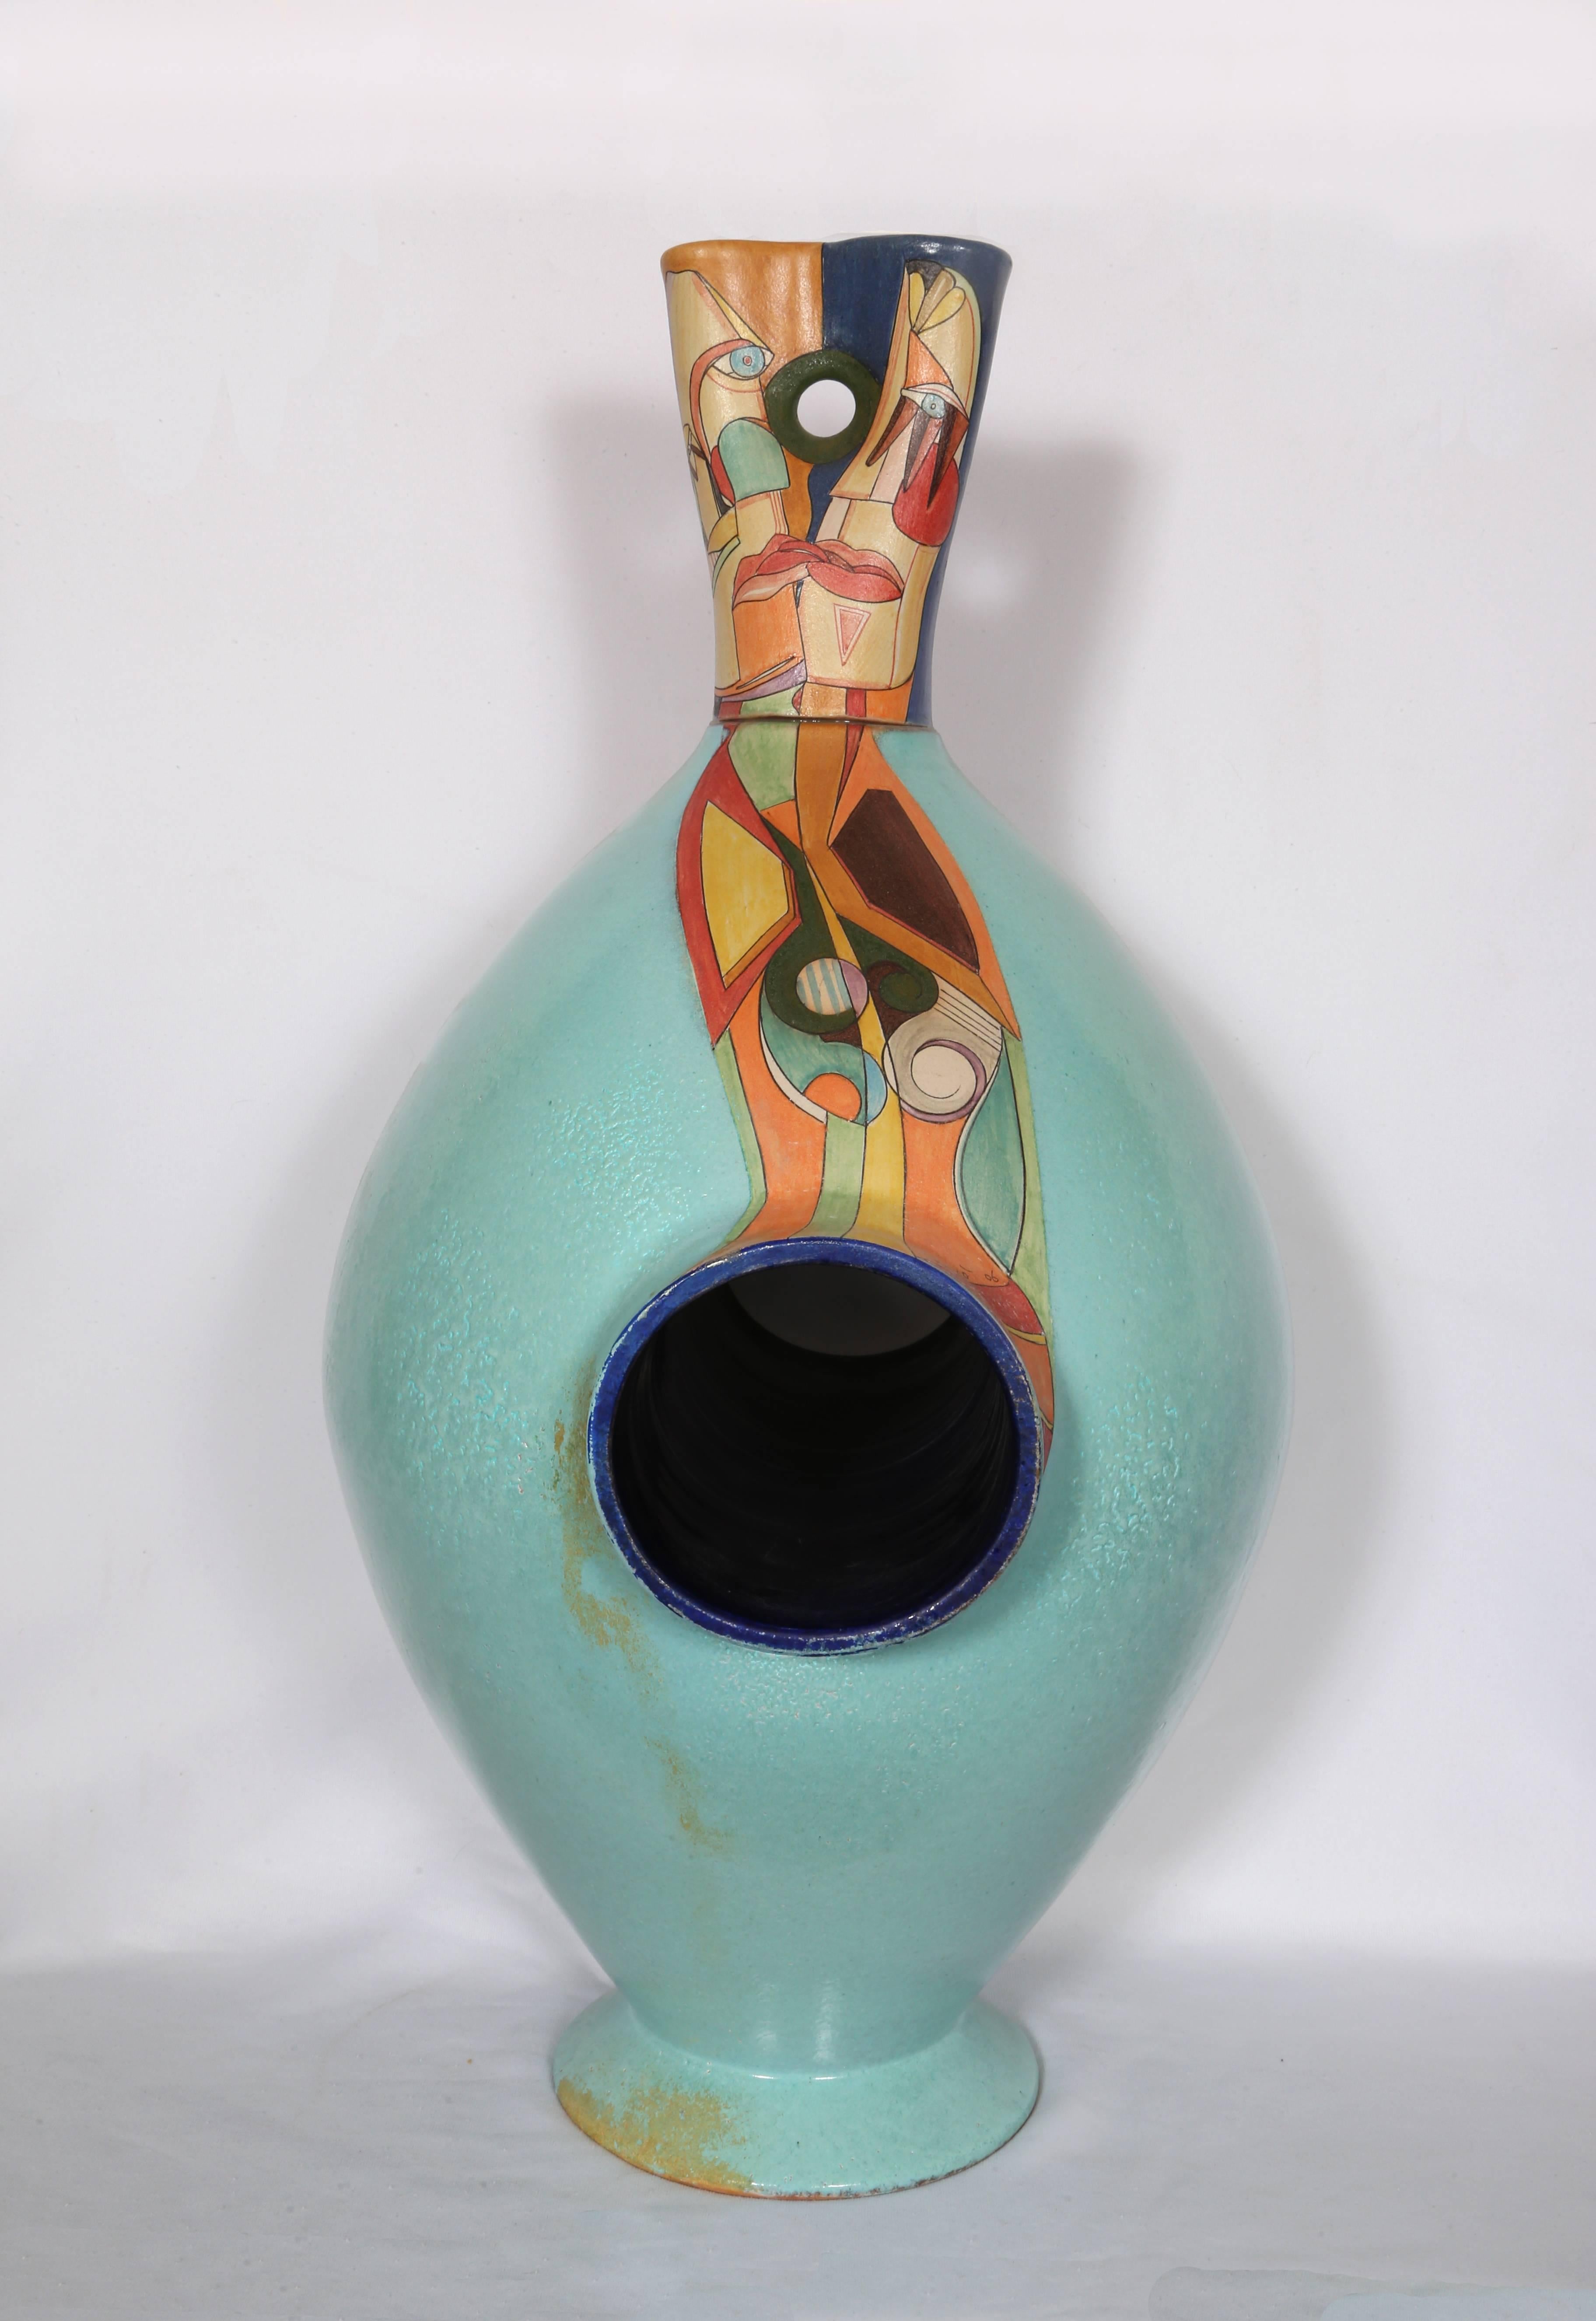 Artistics : Mirko' Guida (italien, né en 1980)
Titre : Baiser
Année : 2006
Moyen : Vase artistique en terre cuite peinte, signé et daté.
Taille : 31  x 19  x 13 in. (78.74  x 48.26  x 33.02 cm)